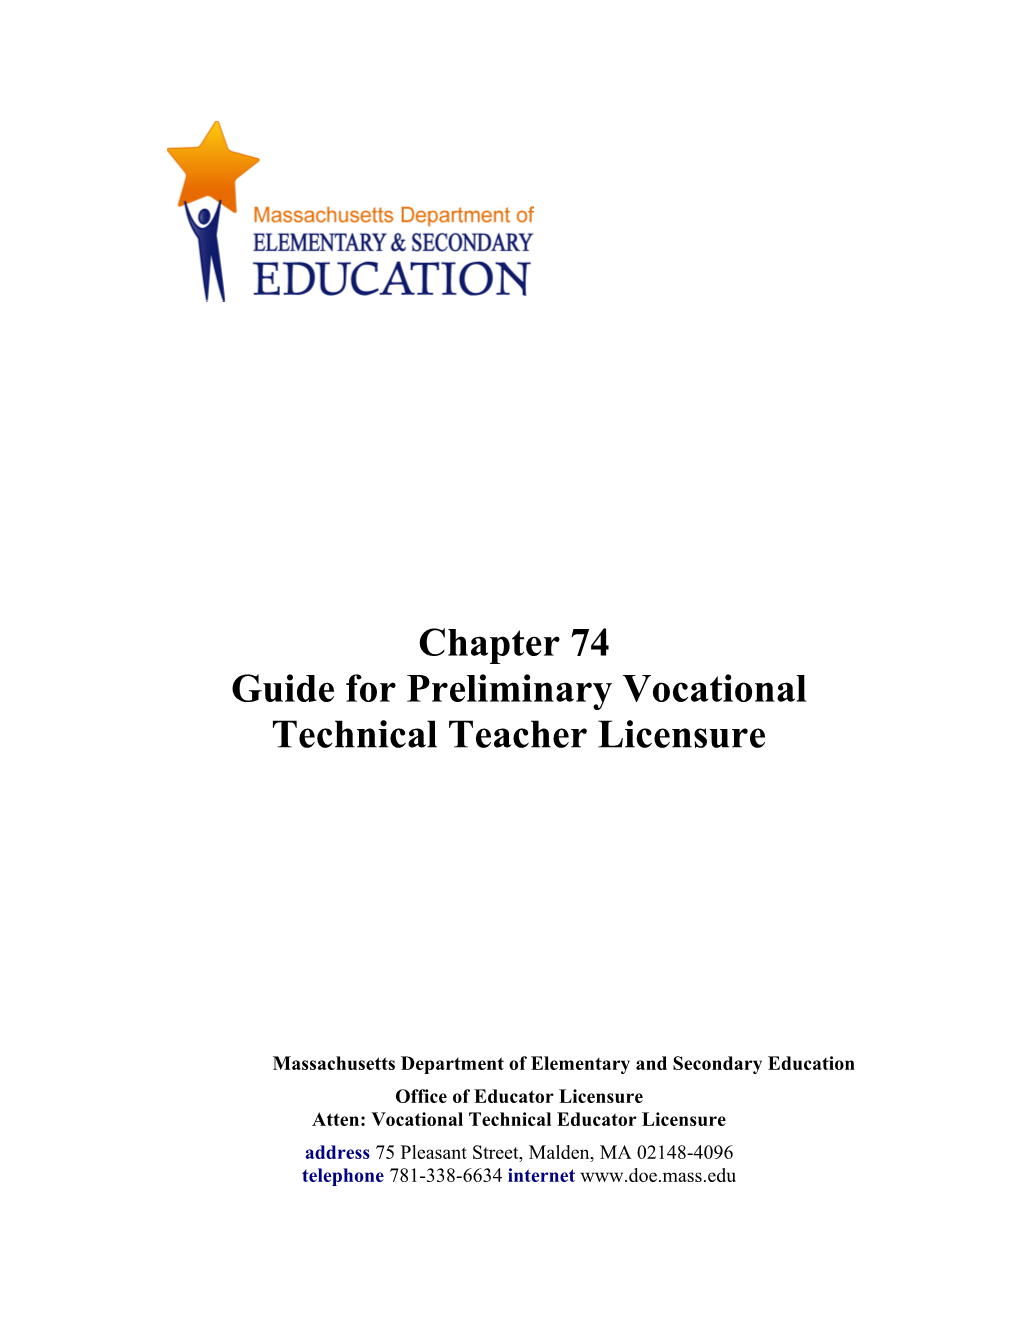 Ch. 74 Guide for Prelim. Voc Tech Teacher Licensure